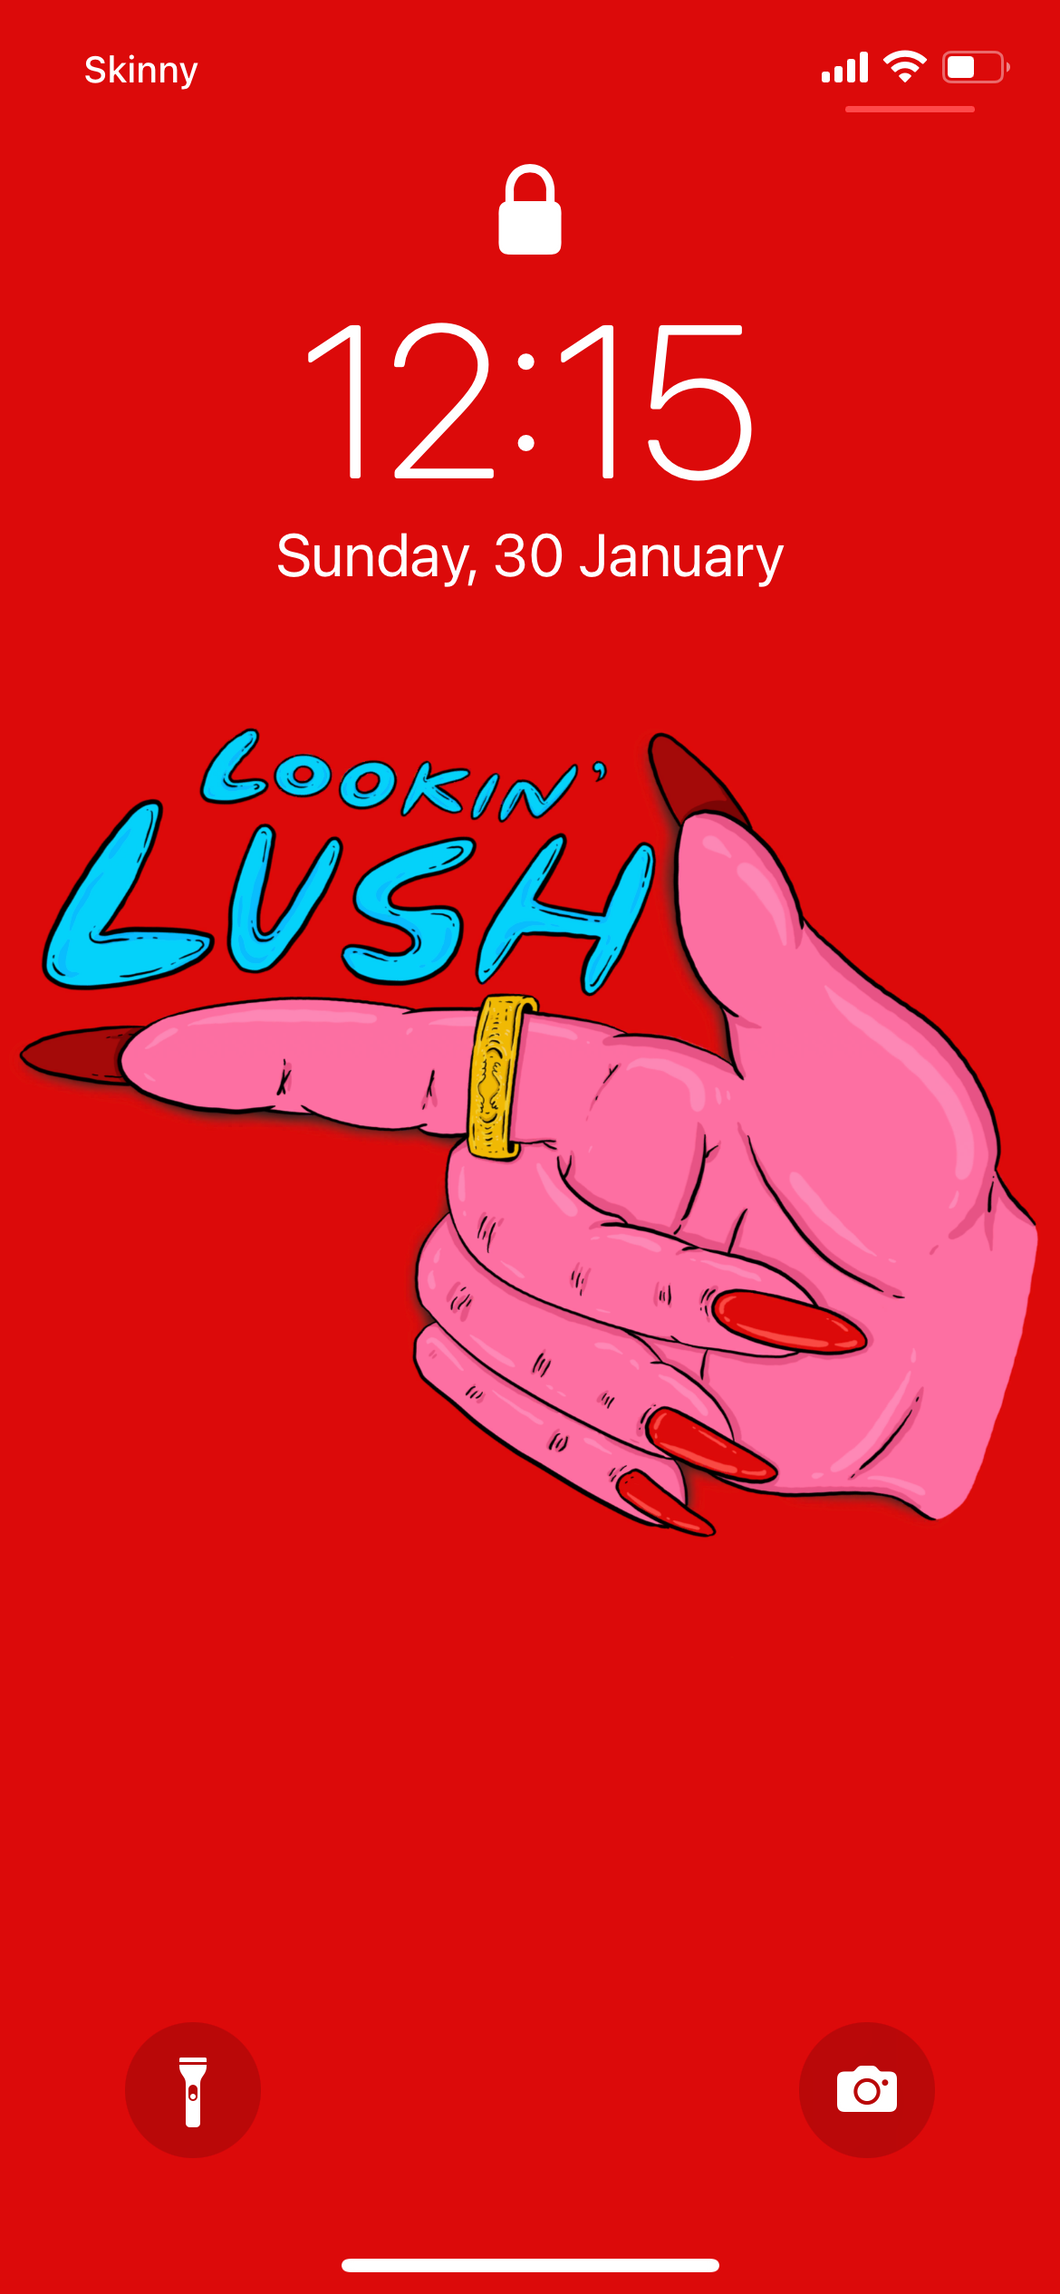 lookin’ lush